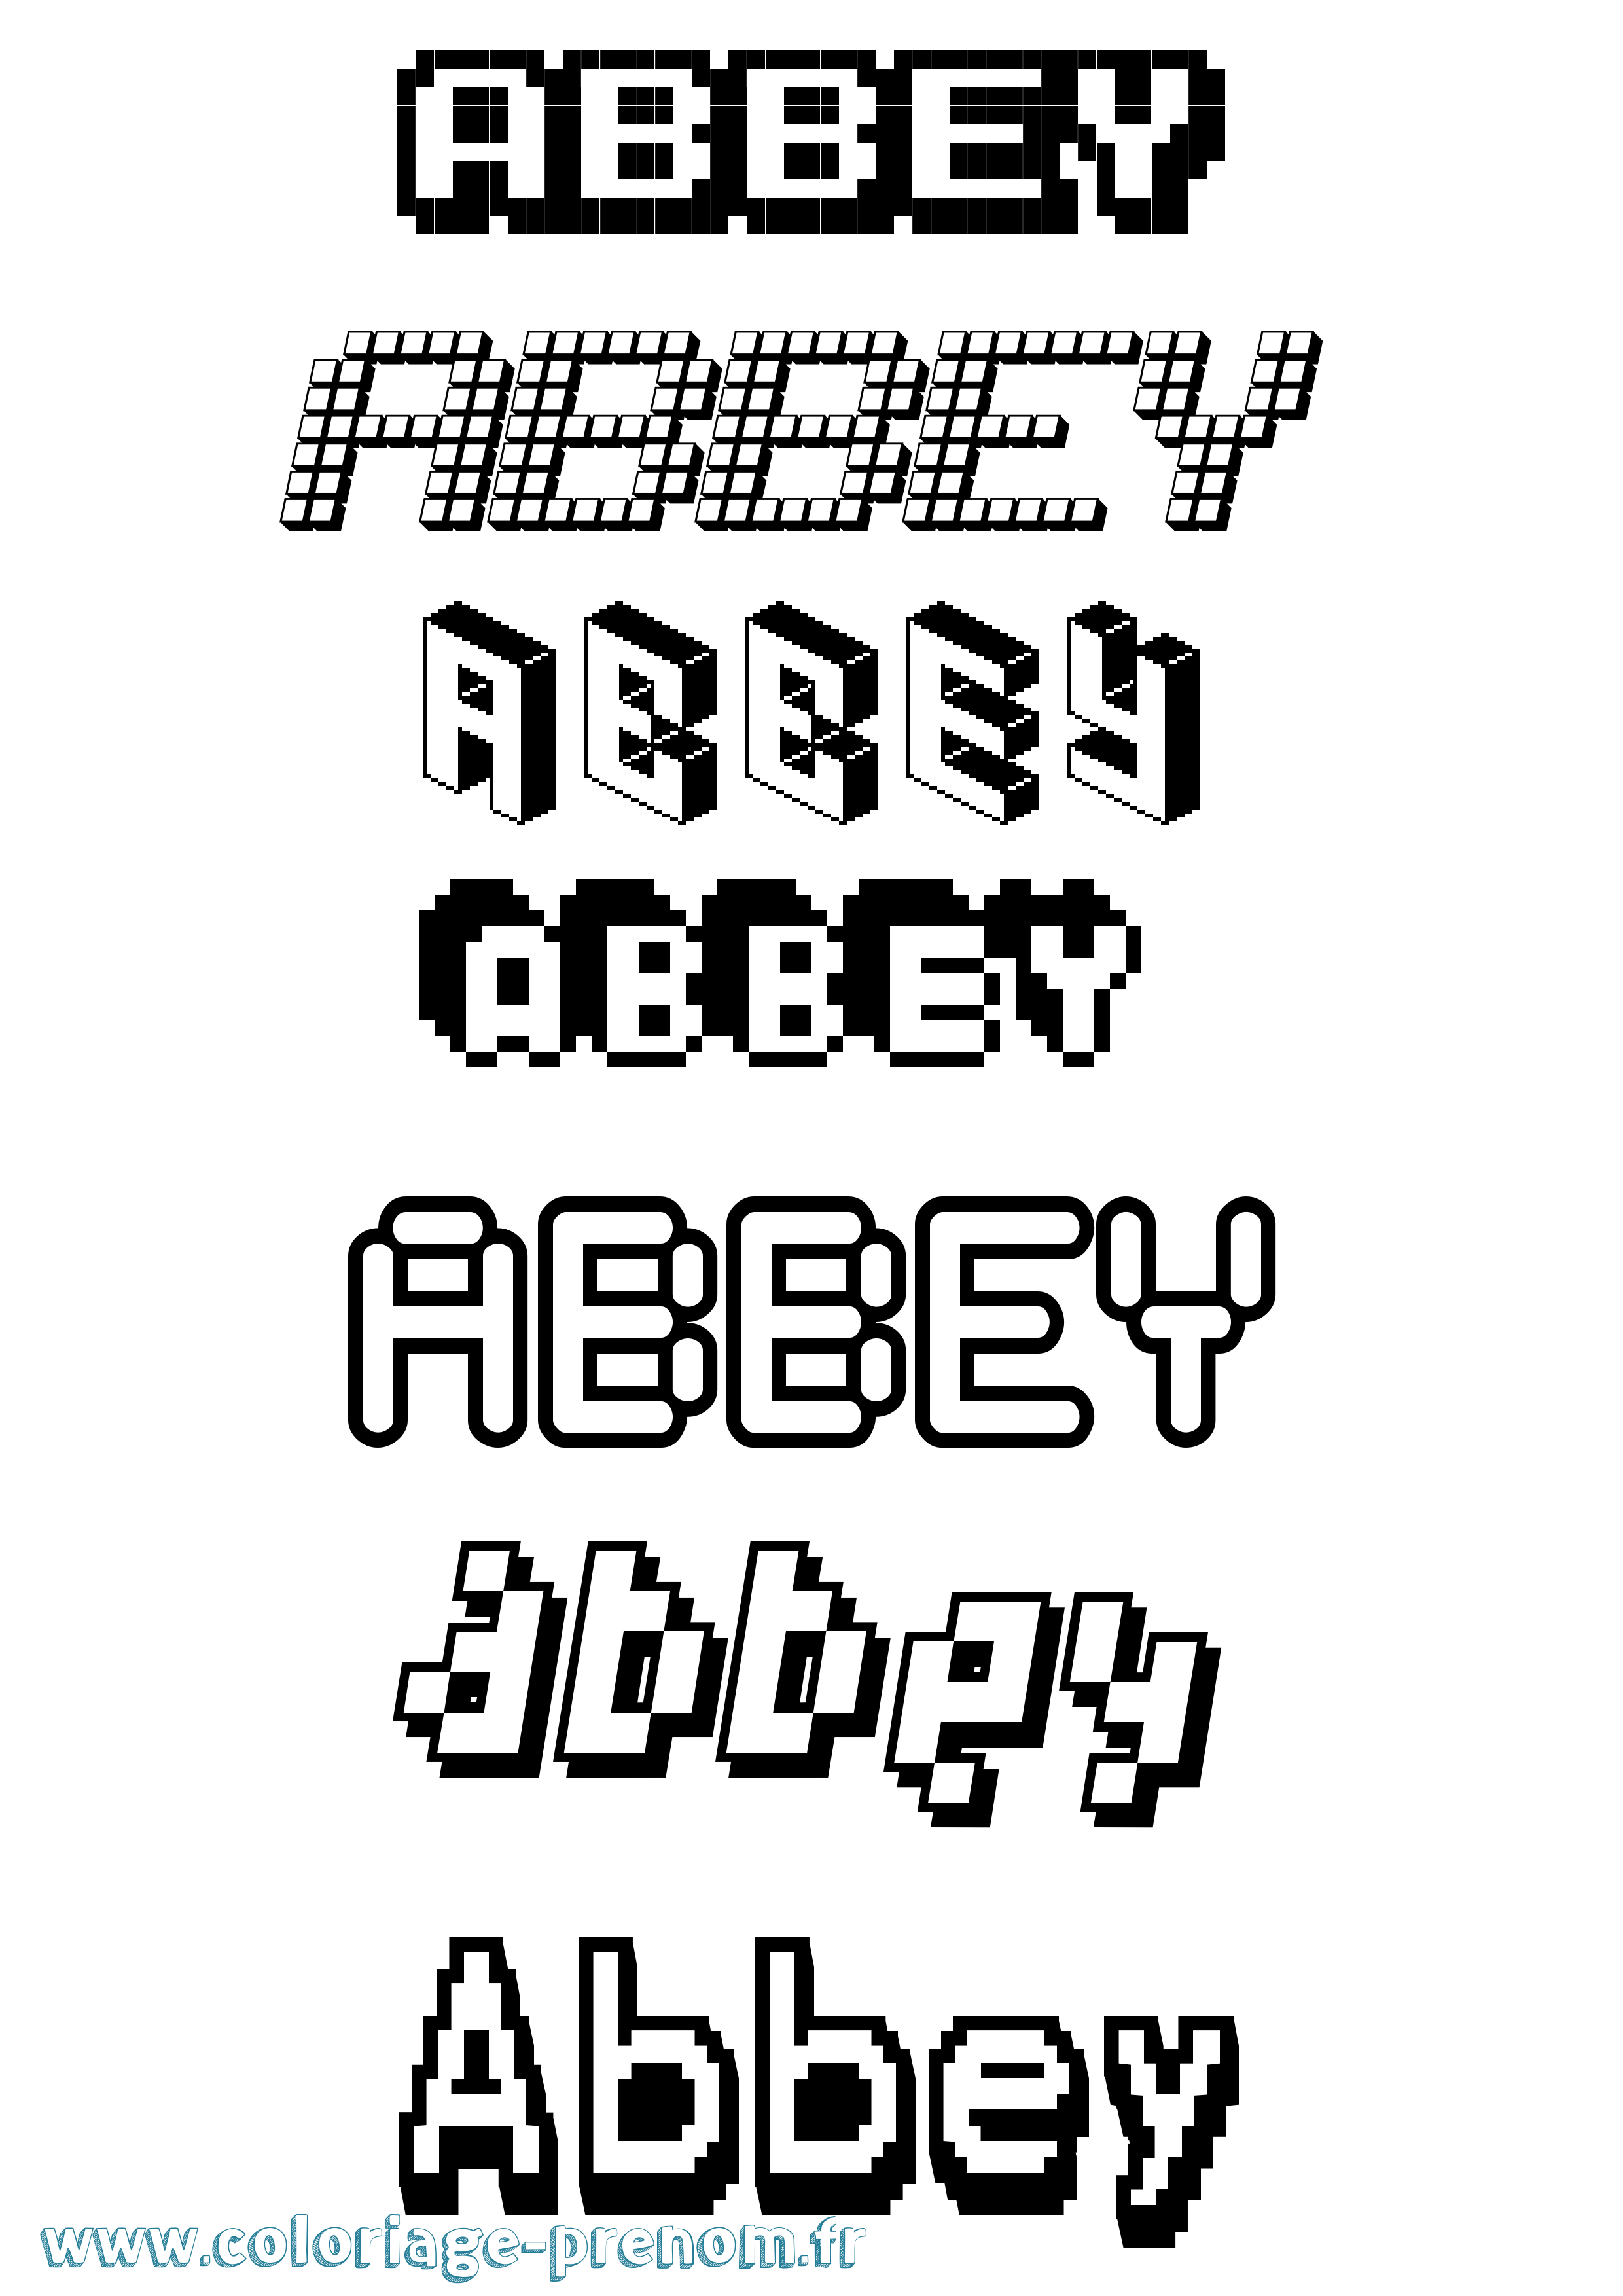 Coloriage prénom Abbey Pixel